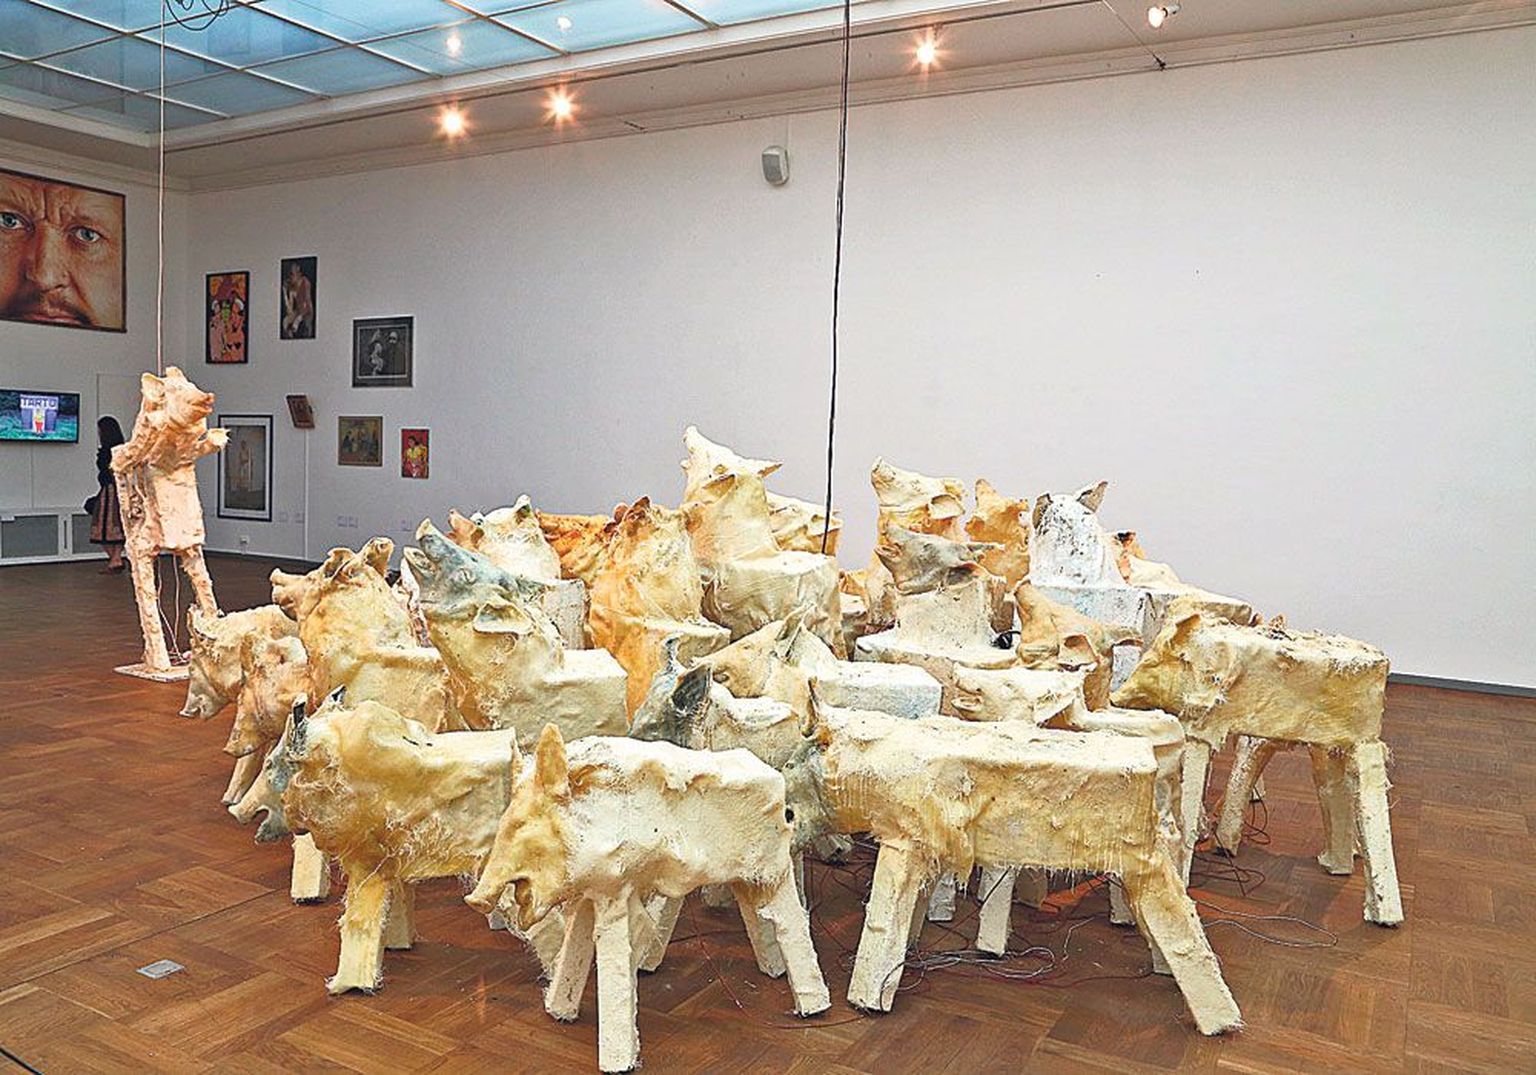 Näituse domineeriv eksponaat, Jass Kaselaane irooniline ja tragikoomiline lavastus, seakisaskulptuurigrupp «Luigelaul», mille tagamaad jäävad vaatajale mõelda.